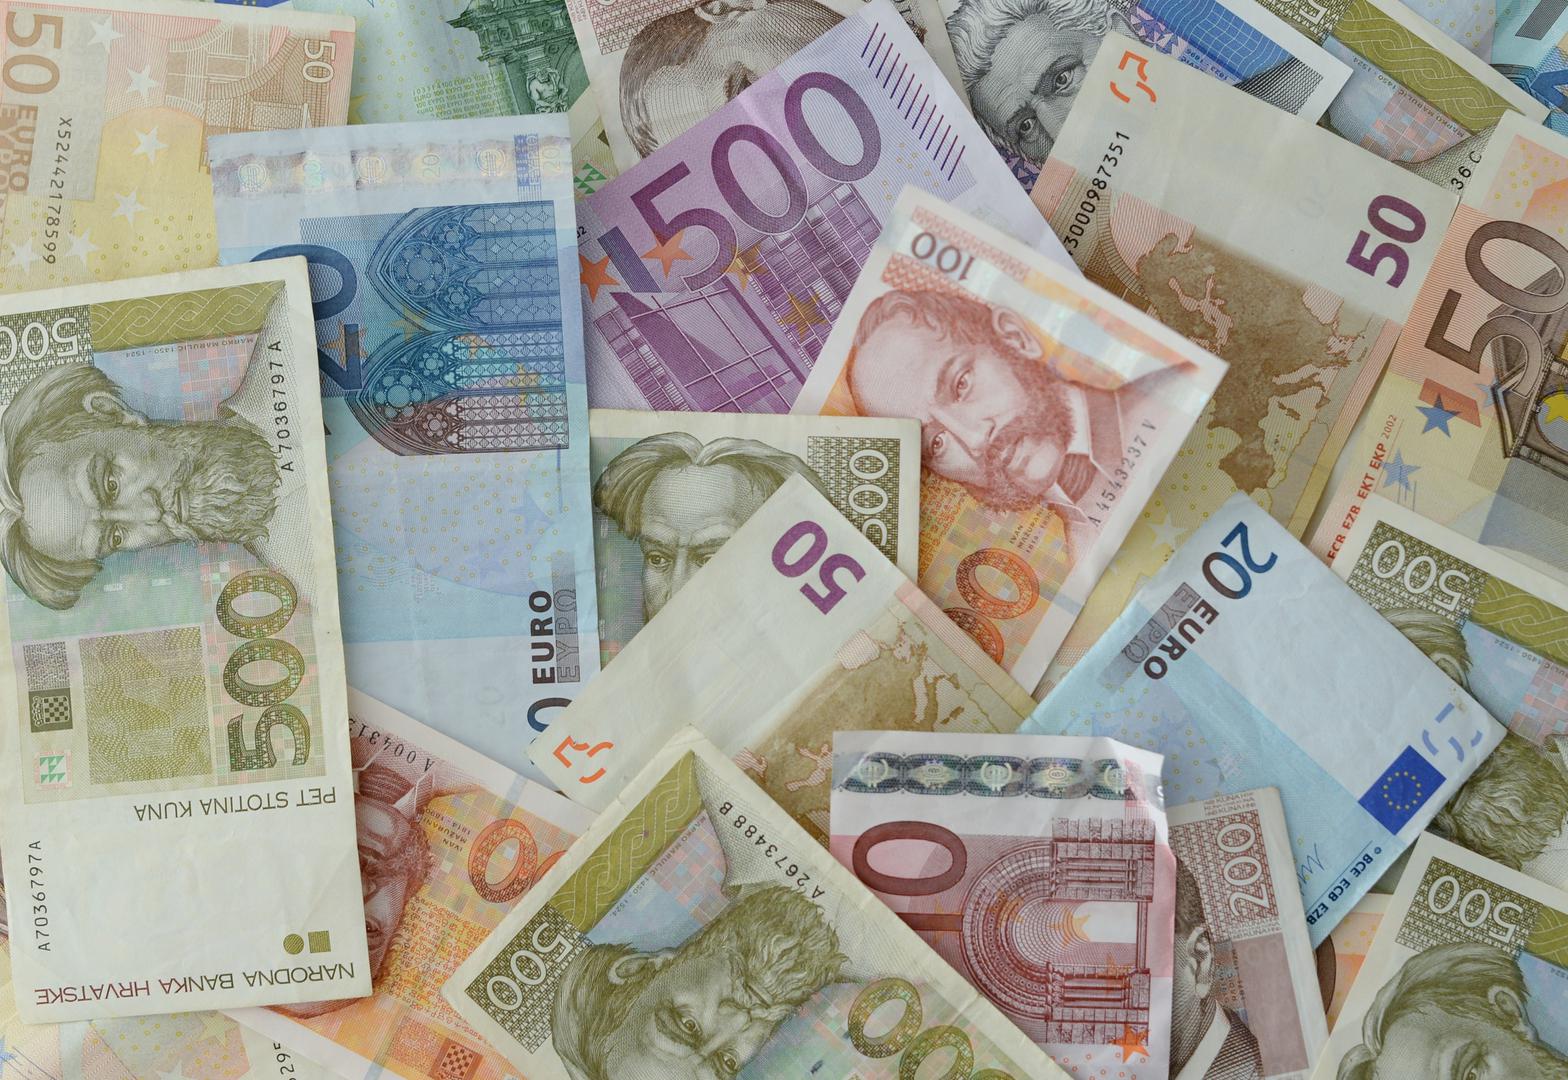 Kada euro zamijeni kunu, a profesorica Marijana Ivanov vjeruje da bi to moglo biti po tečaju 7,5 kuna za jedan euro jer je to prosječna vrijednost zadnjih 10 godina, simboli hrvatskog identiteta naći će se na kovanicama eura.